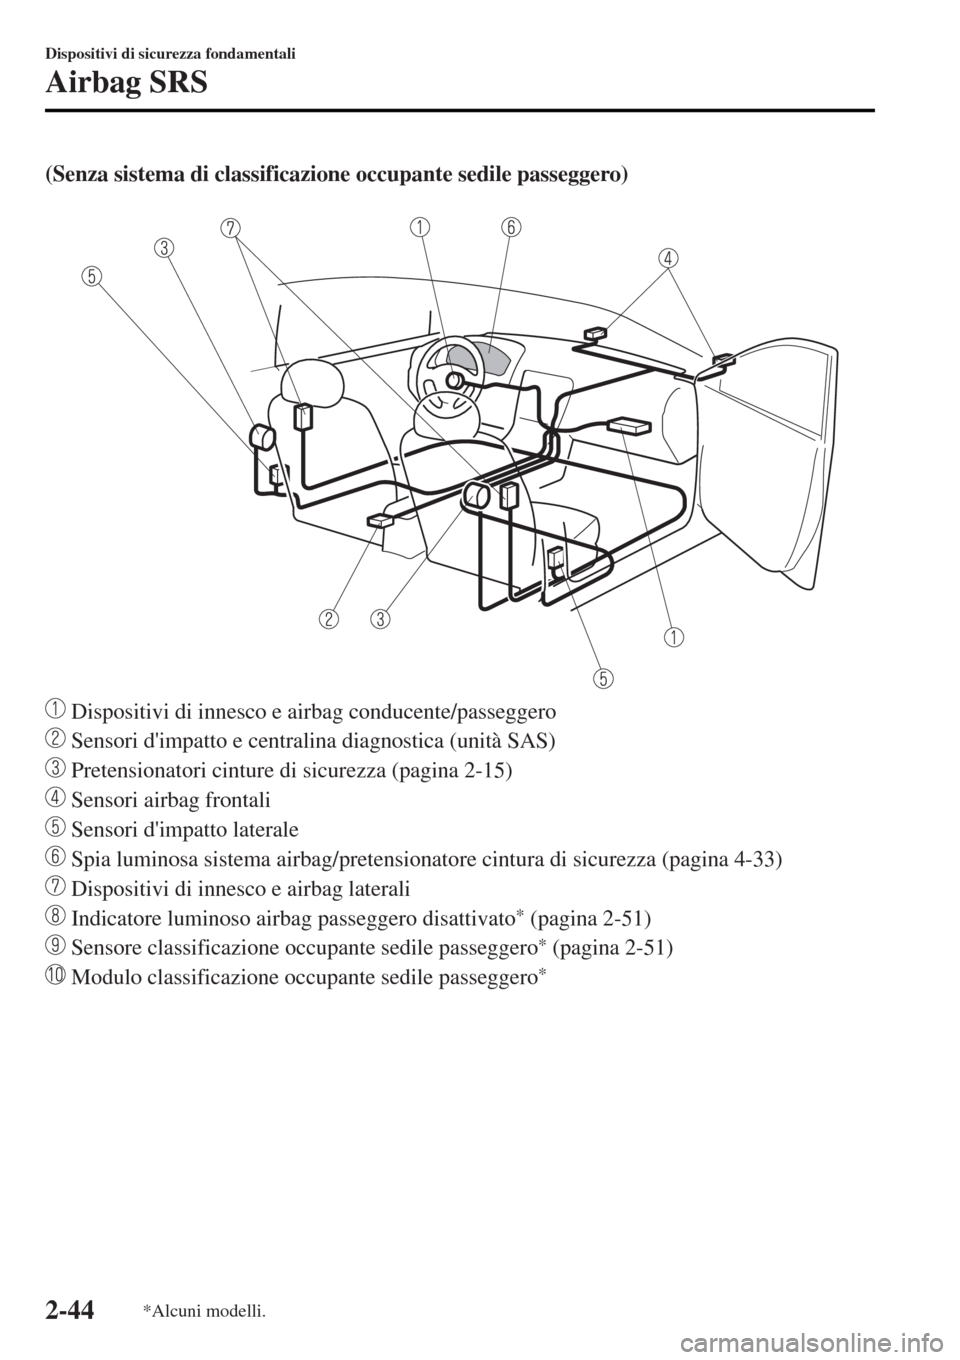 MAZDA MODEL MX-5 2015  Manuale del proprietario (in Italian) (Senza sistema di classificazione occupante sedile passeggero)
 
 Dispositivi di innesco e airbag conducente/passeggero
 Sensori dimpatto e centralina diagnostica (unità SAS)
 Pretensionatori cintur